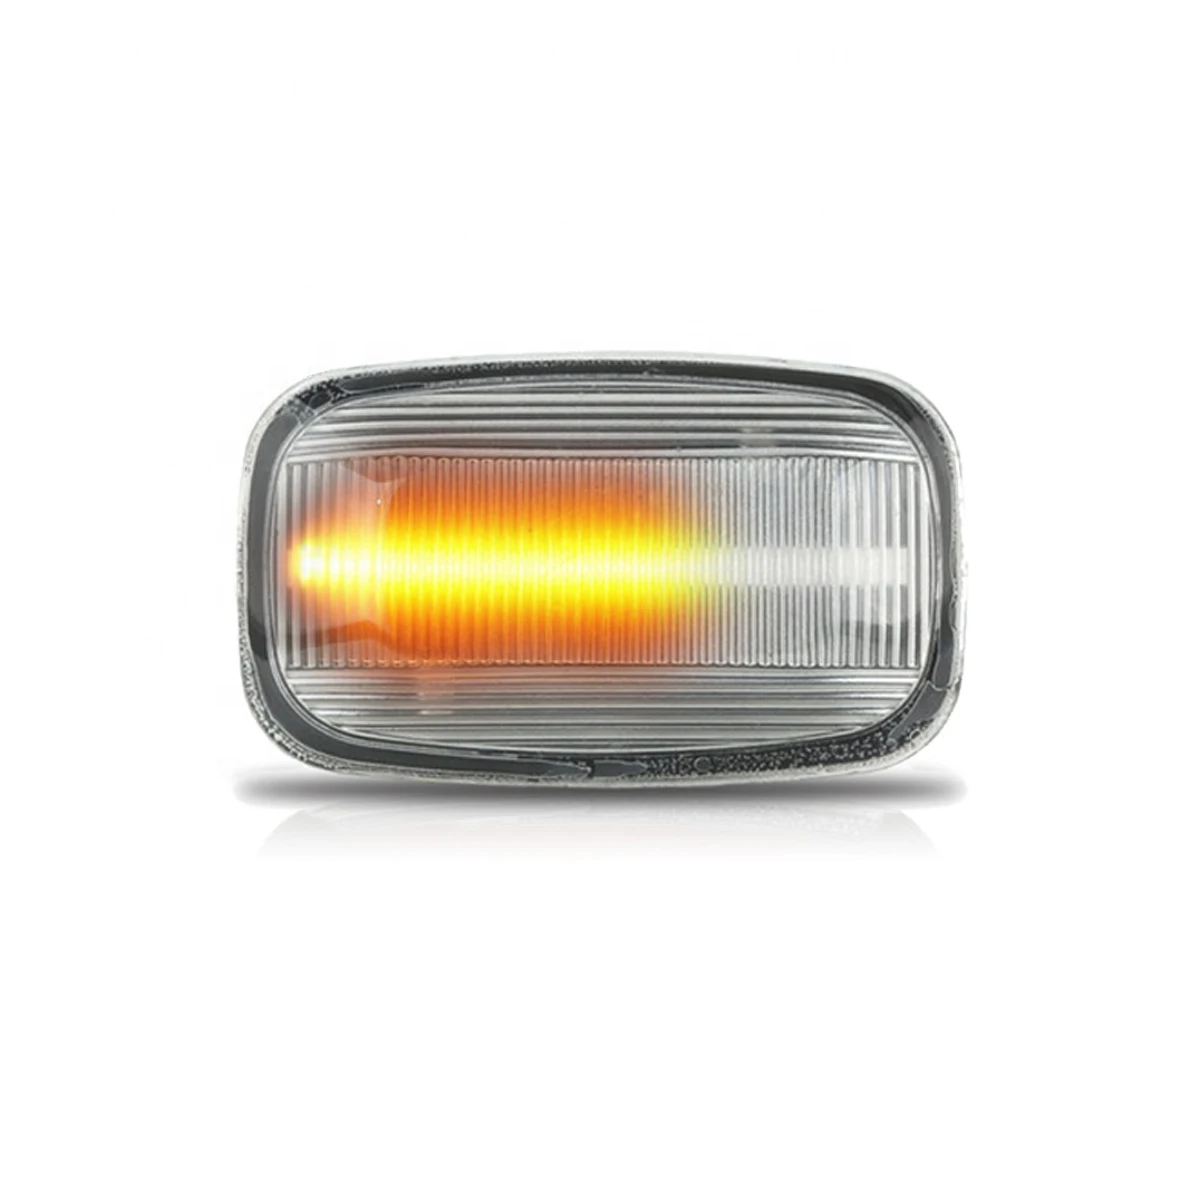 2 шт. Динамический светодиодный фонарь с боковым маркером, светильник s 12 В, светильник с поворотным сигналом, боковой ретранслятор для Toyota Landcruiser 70 80 100 Series